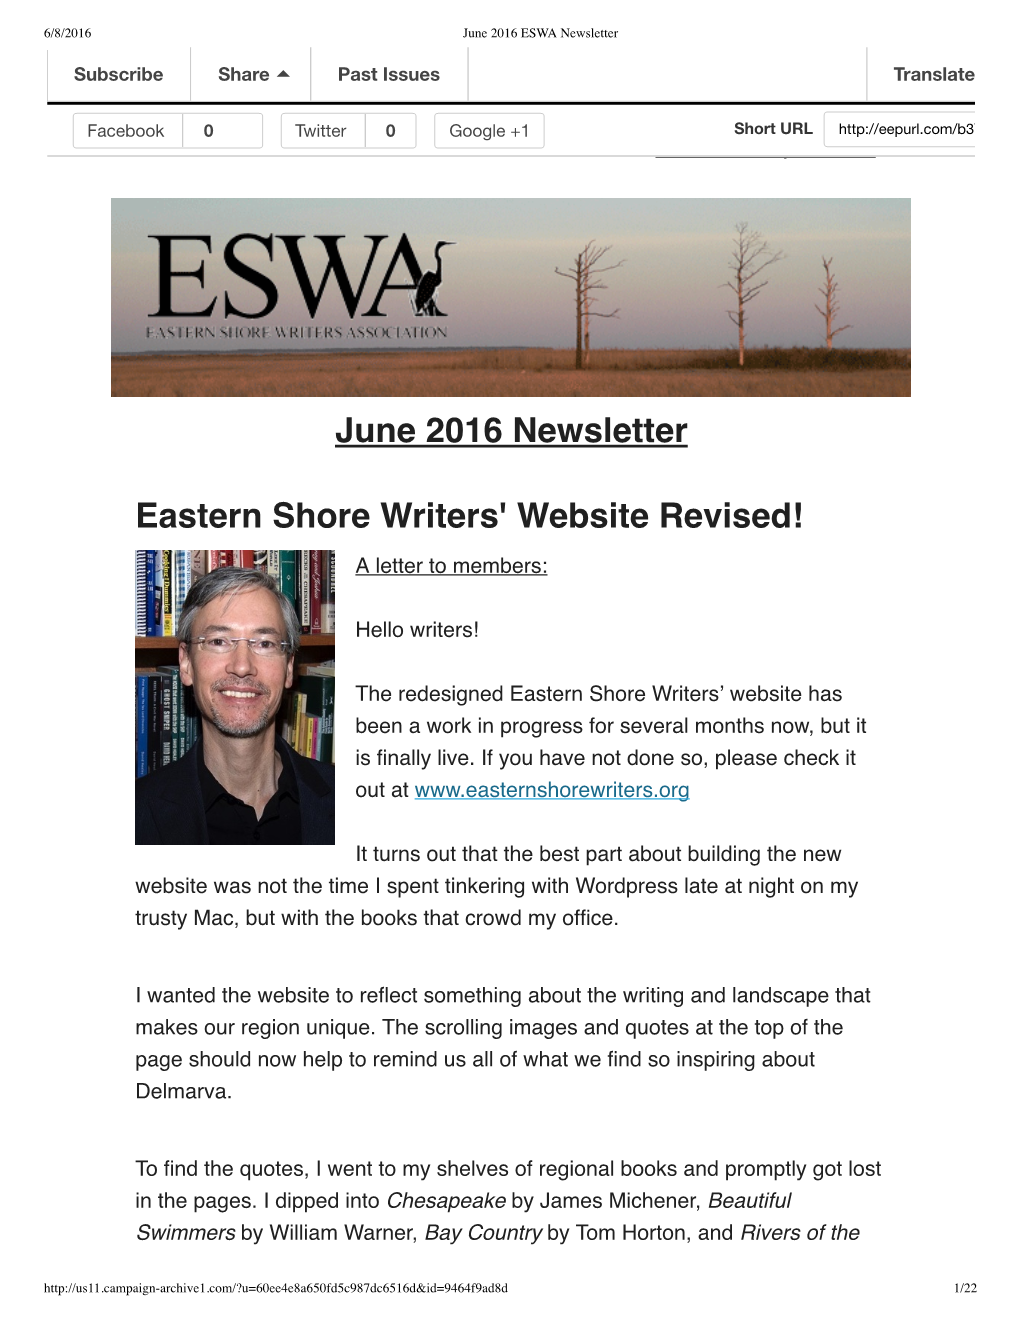 June 2016 Newsletter Eastern Shore Writers' Website Revised!